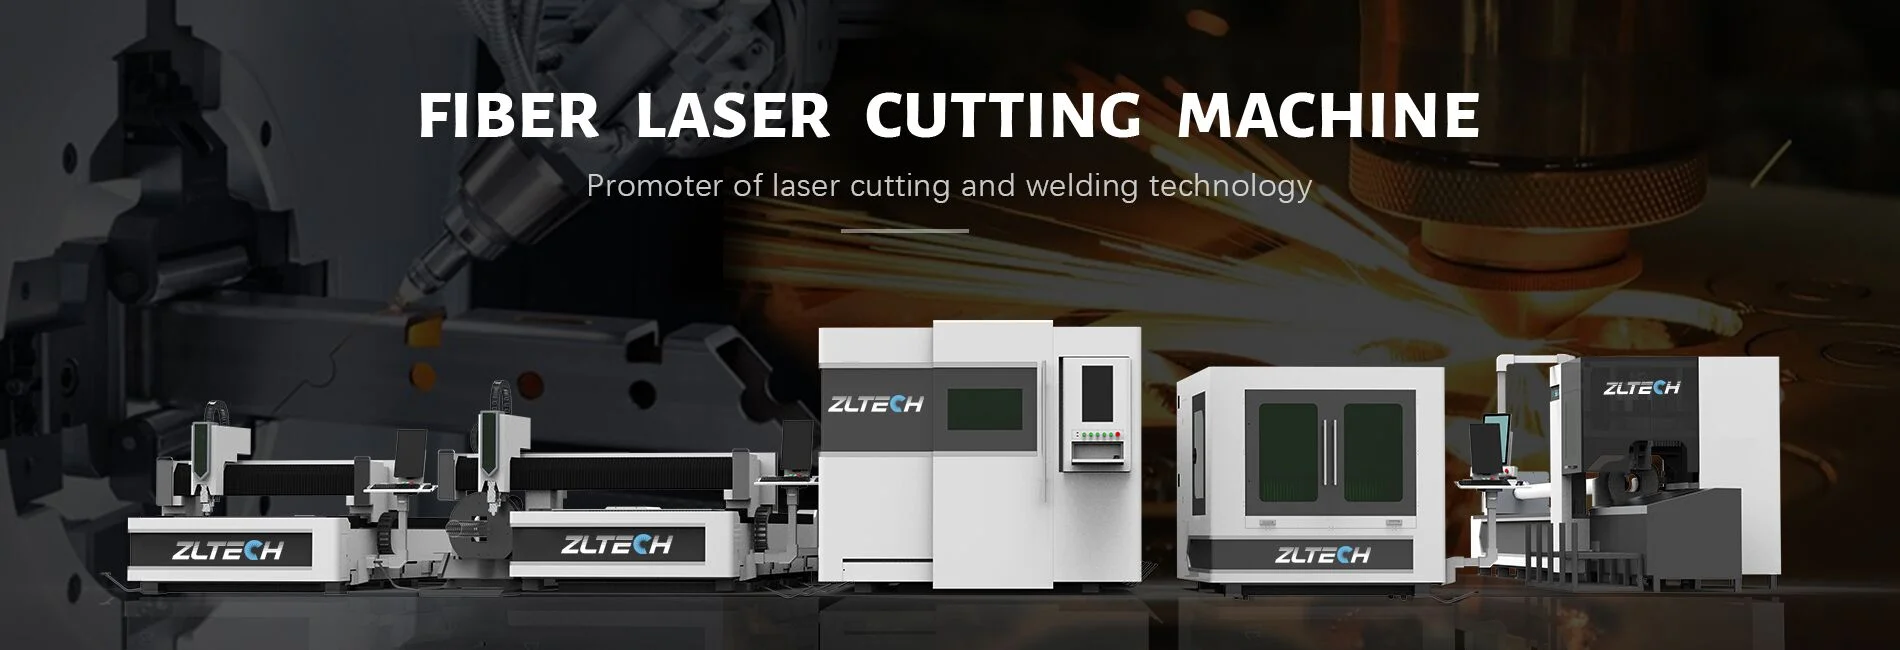 ZLTECH sheet metal laser cutting machine manufacturer banner